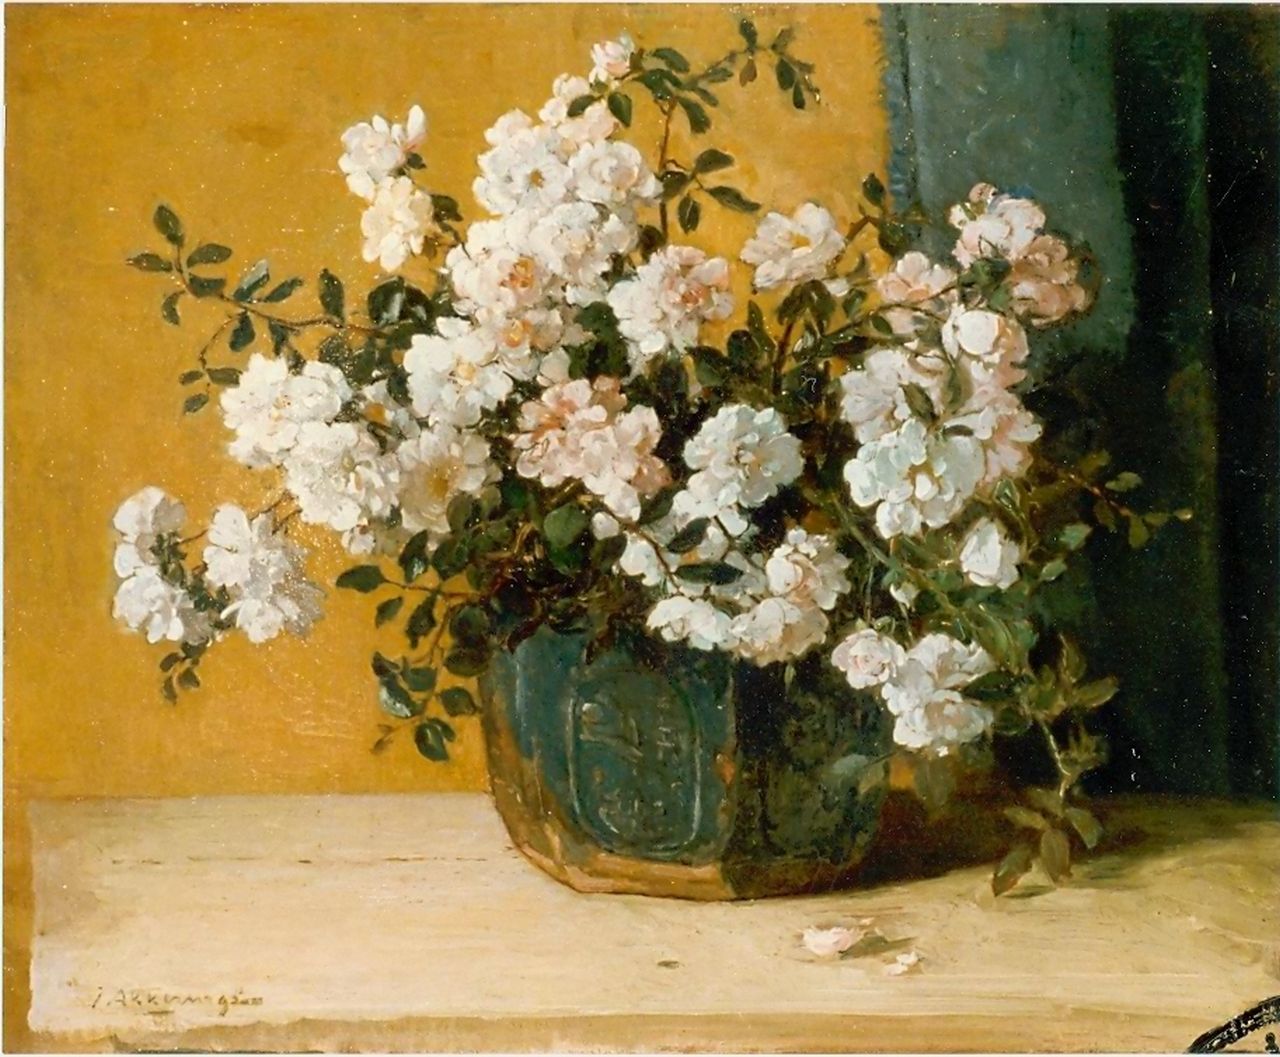 Akkeringa J.E.H.  | 'Johannes Evert' Hendrik Akkeringa, A still life of roses, Öl auf Leinwand 43,0 x 53,0 cm, signed l.l.